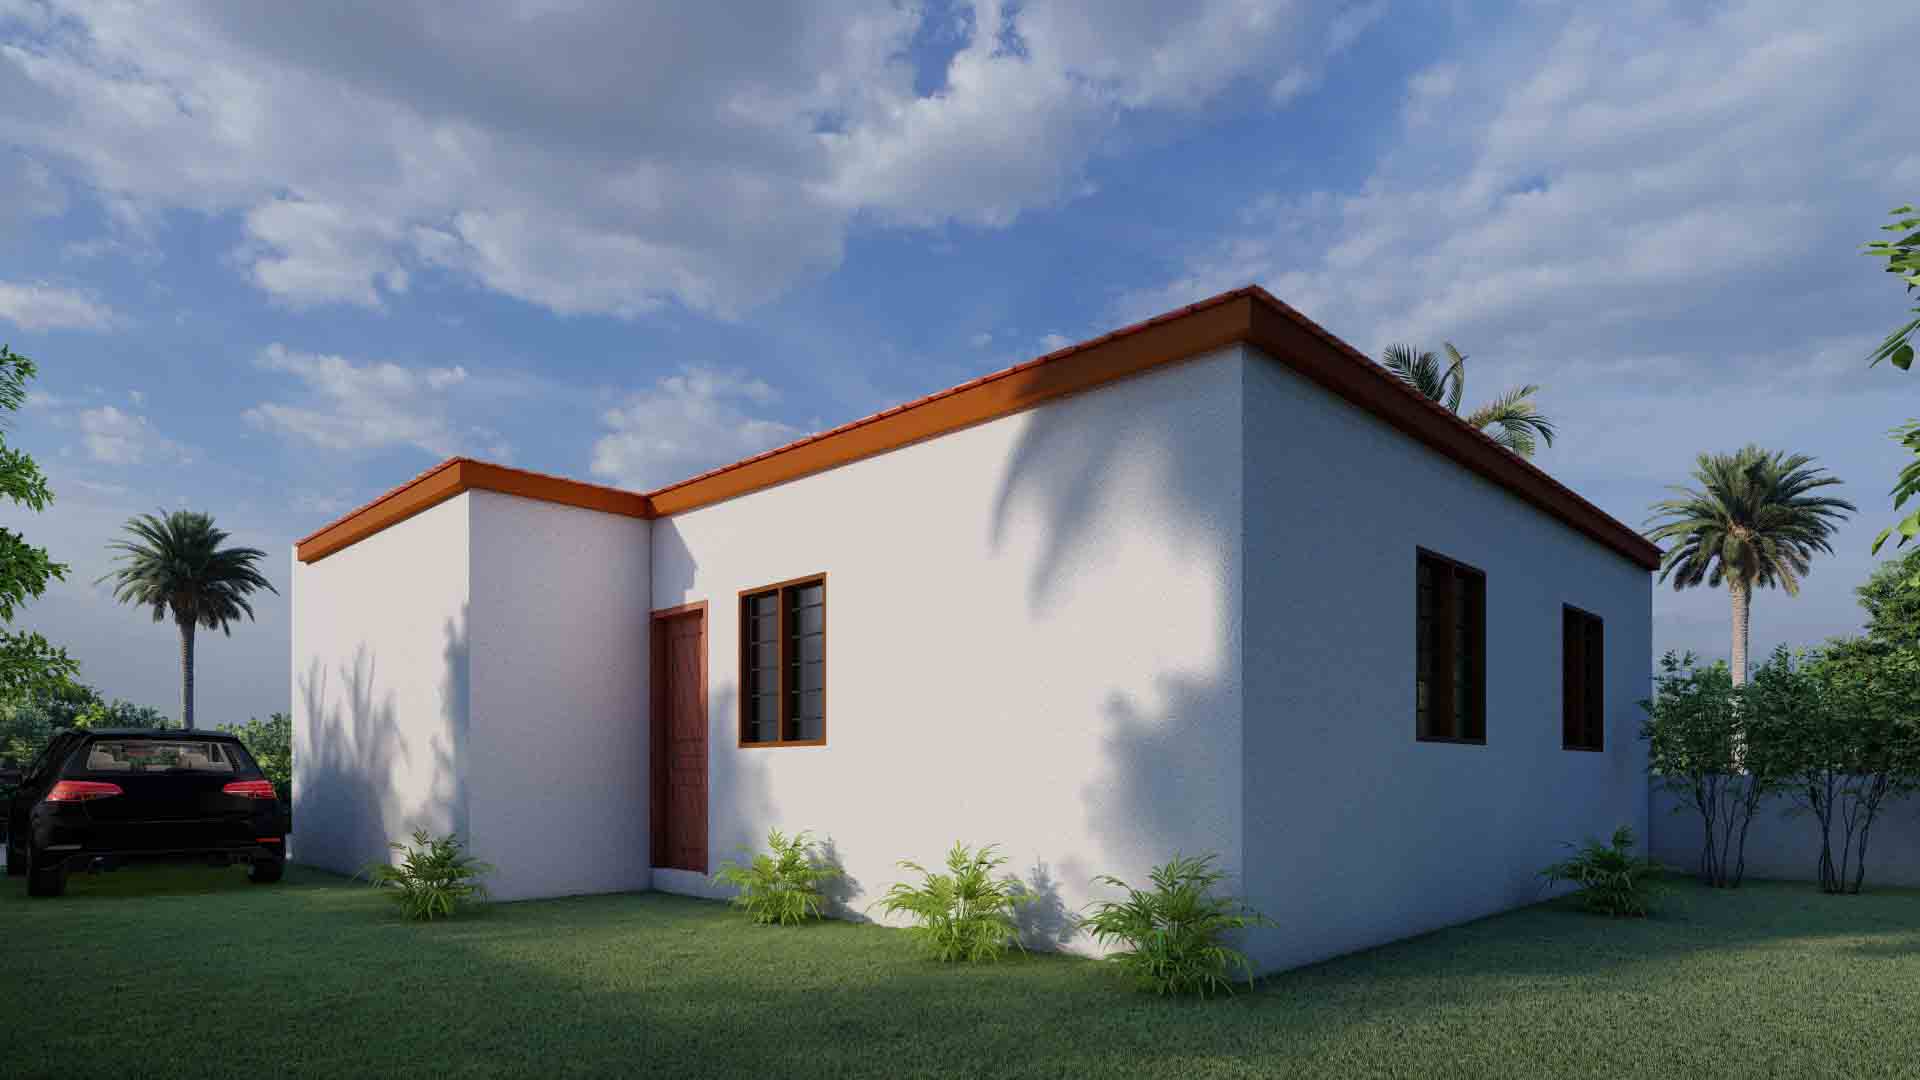 En fin d’année, l’entreprise immobilière « e2js construction » vous donne l’opportunité d ‘être propriétaire d’une villa à 35 millions FCFA